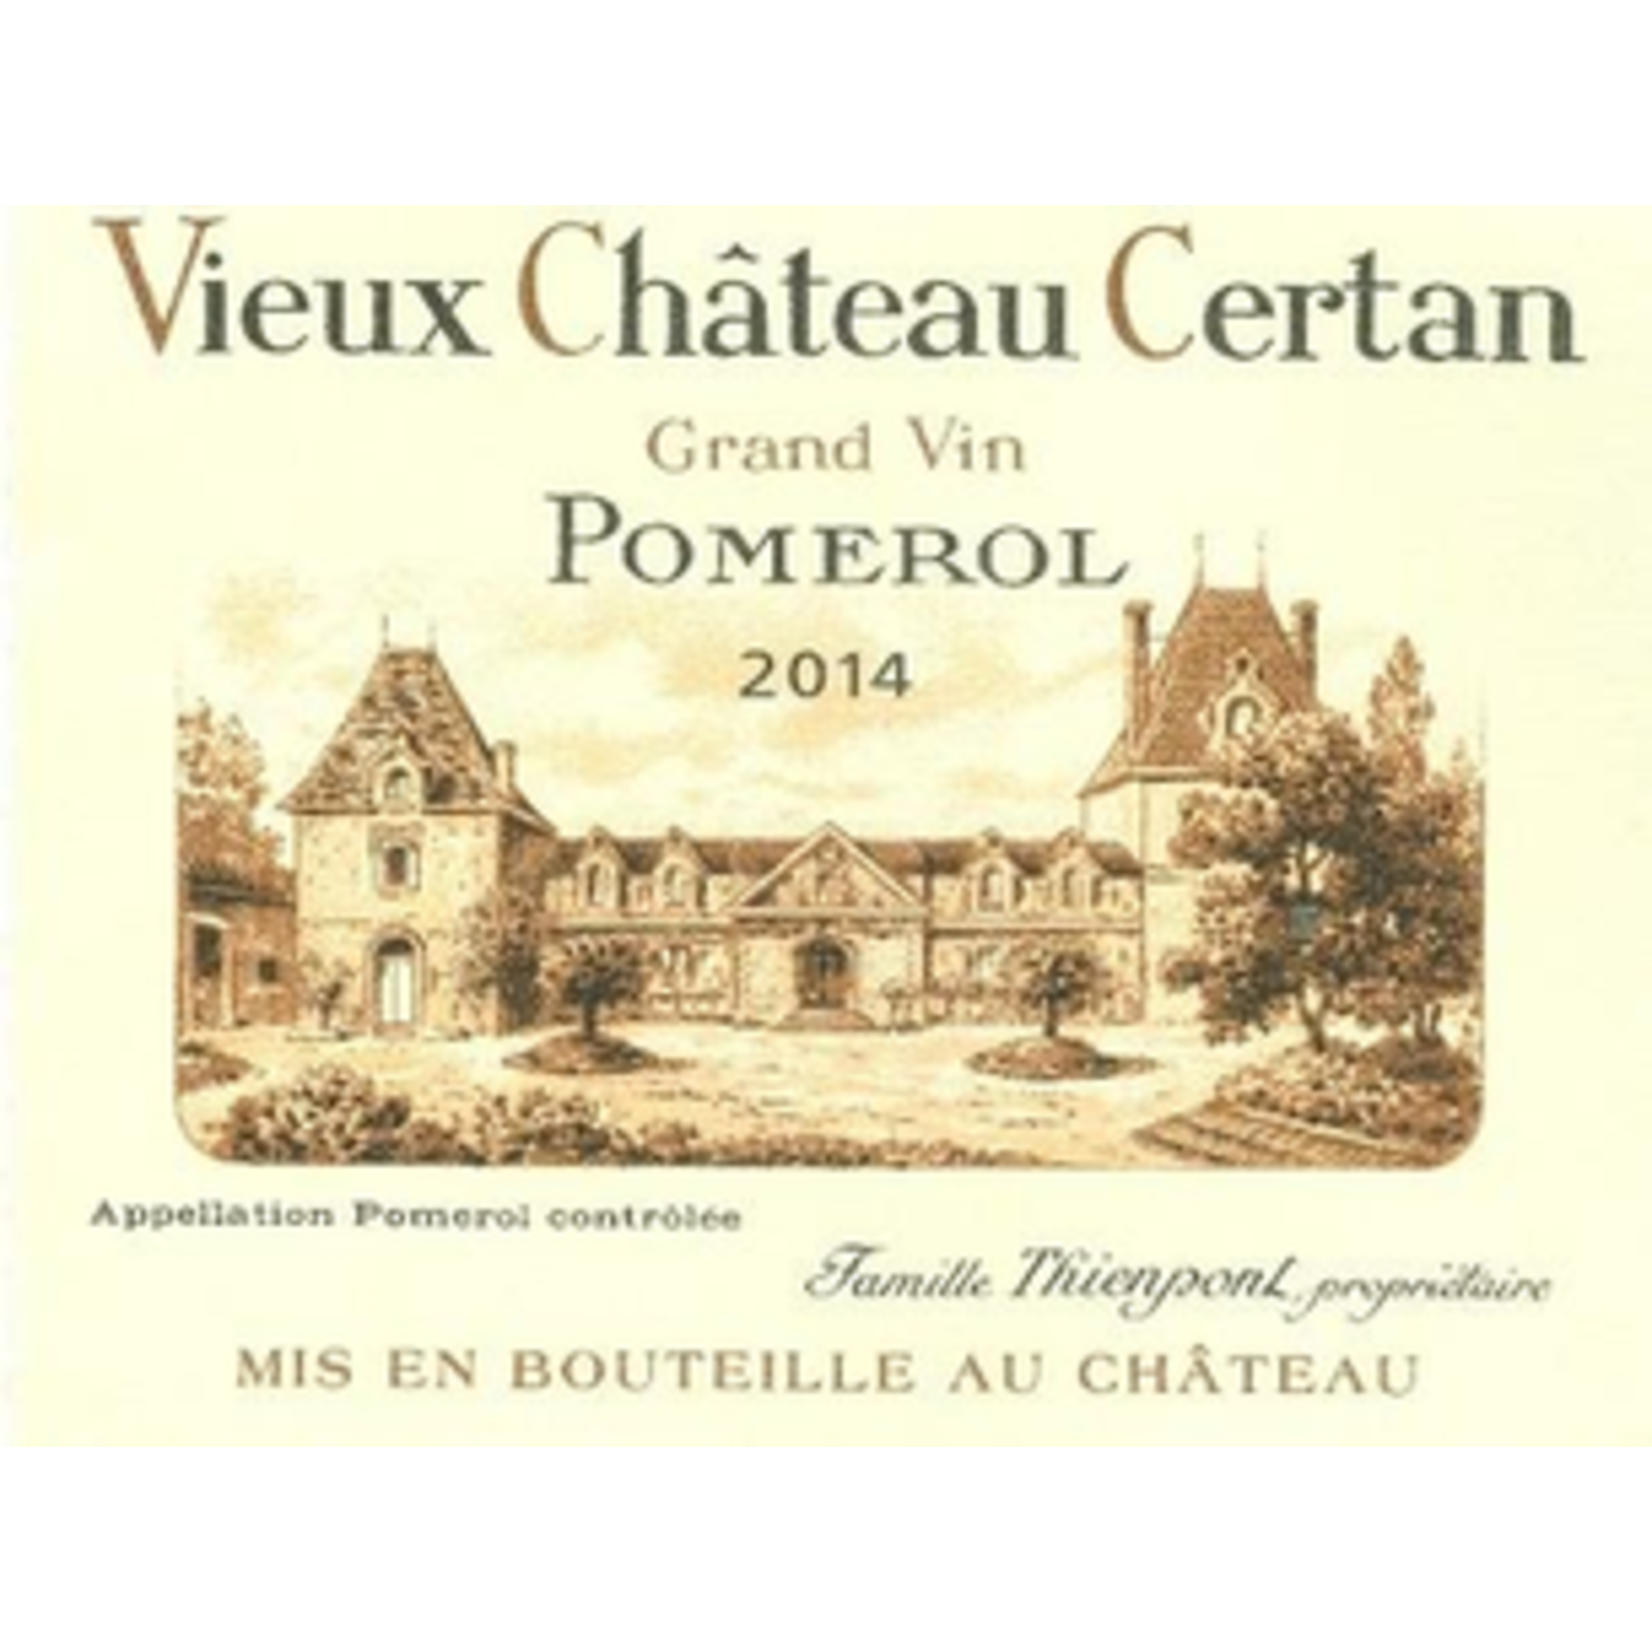 Wine Vieux Chateau Certan 2014